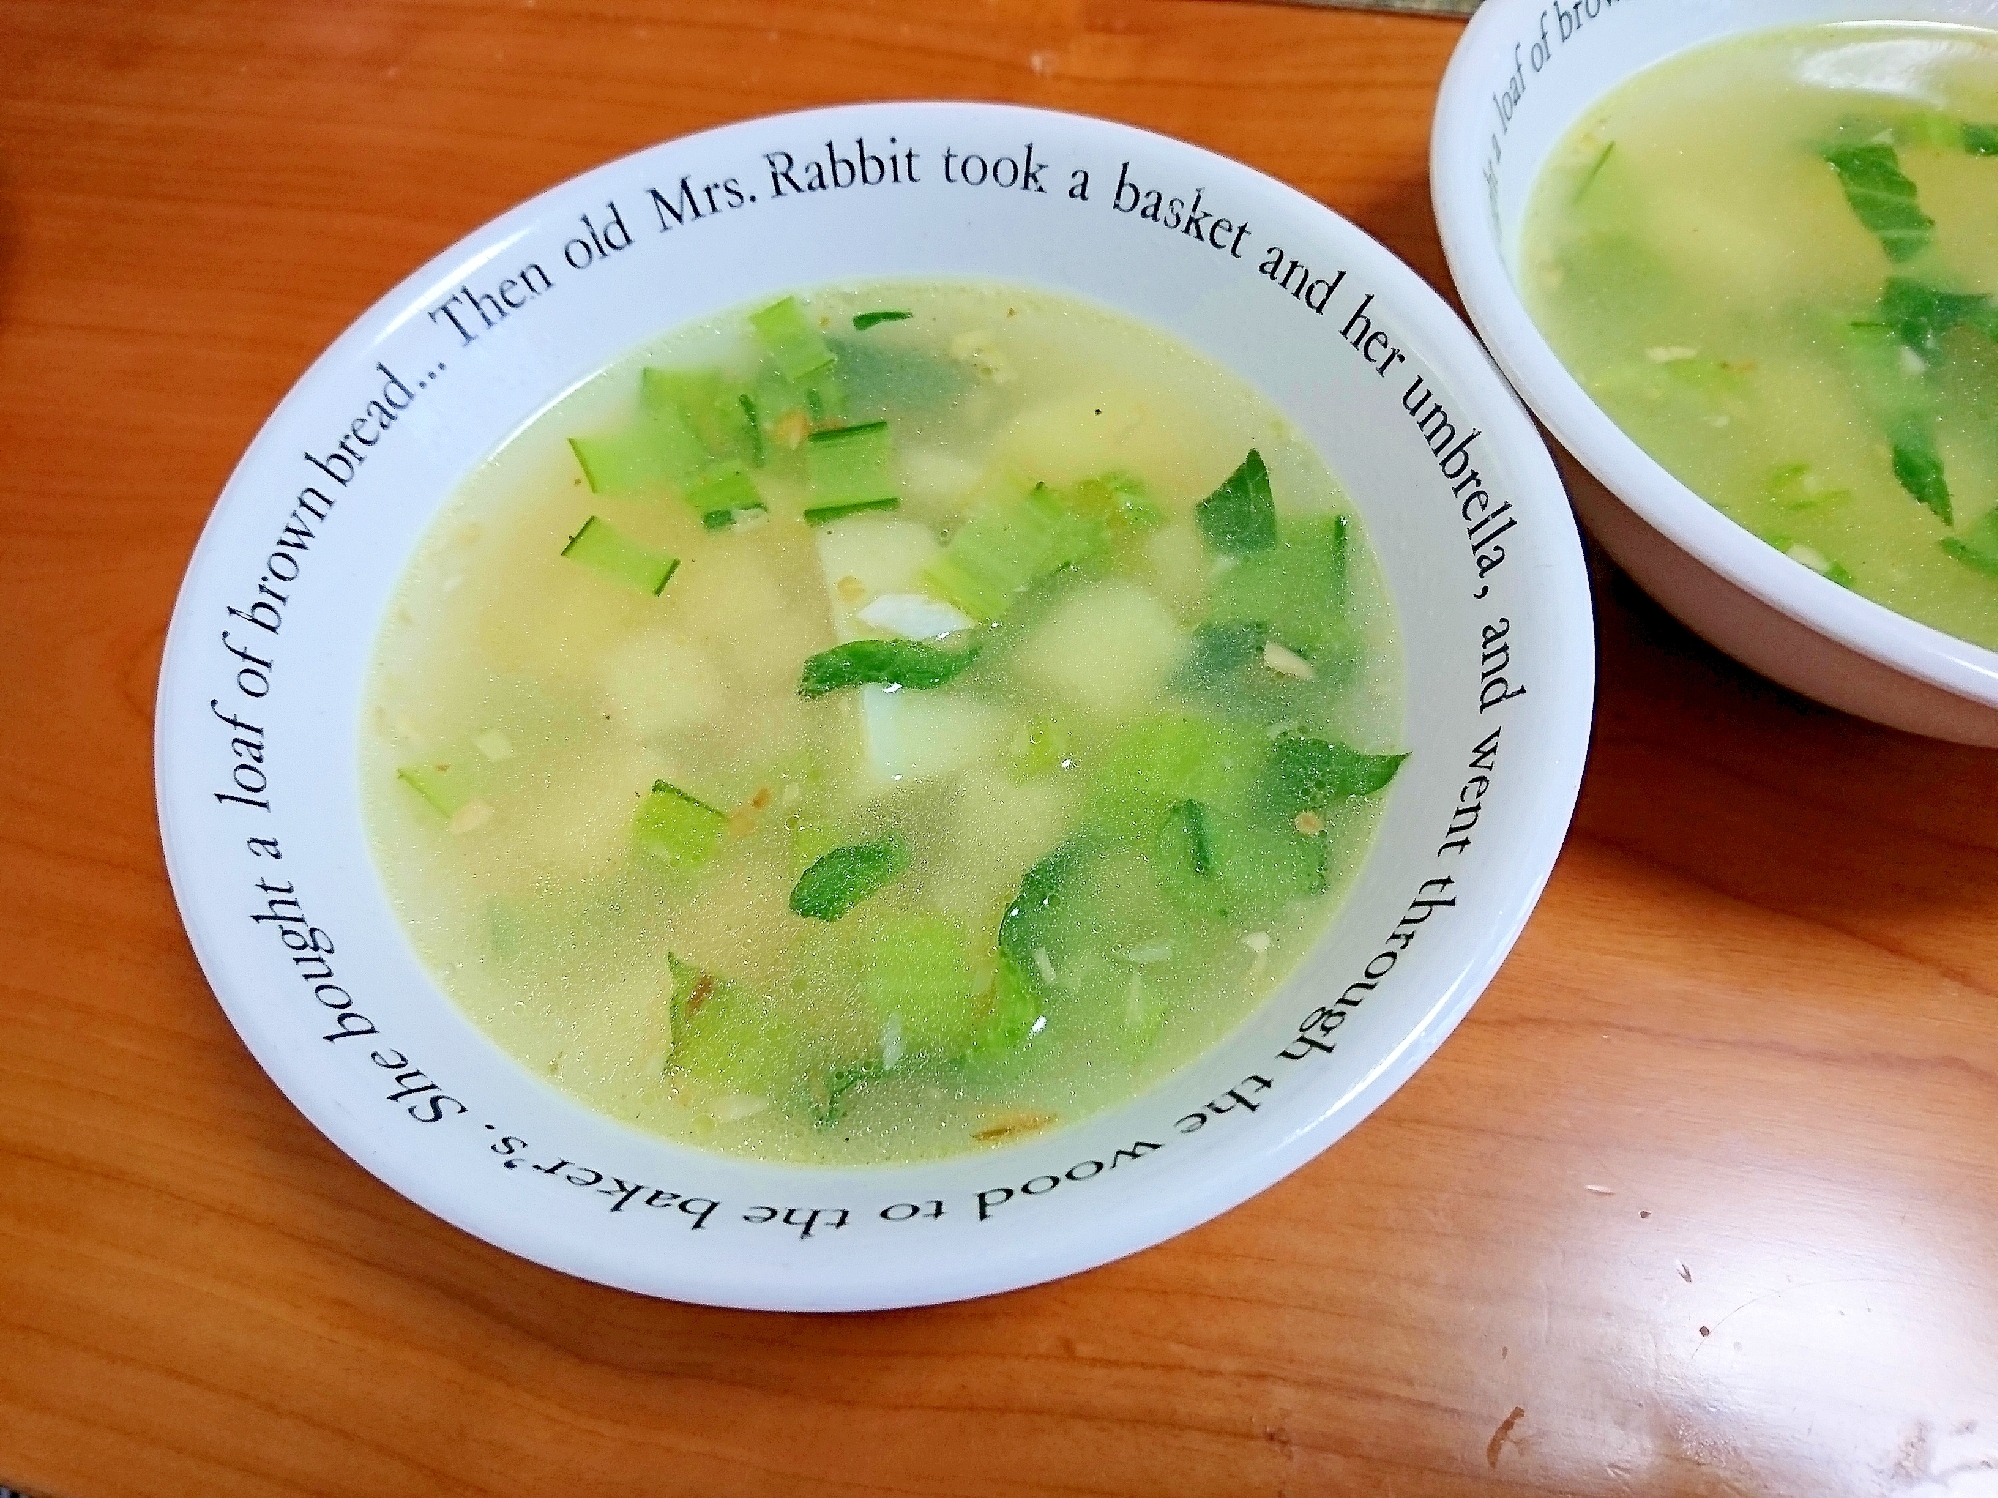 にんにくスープ